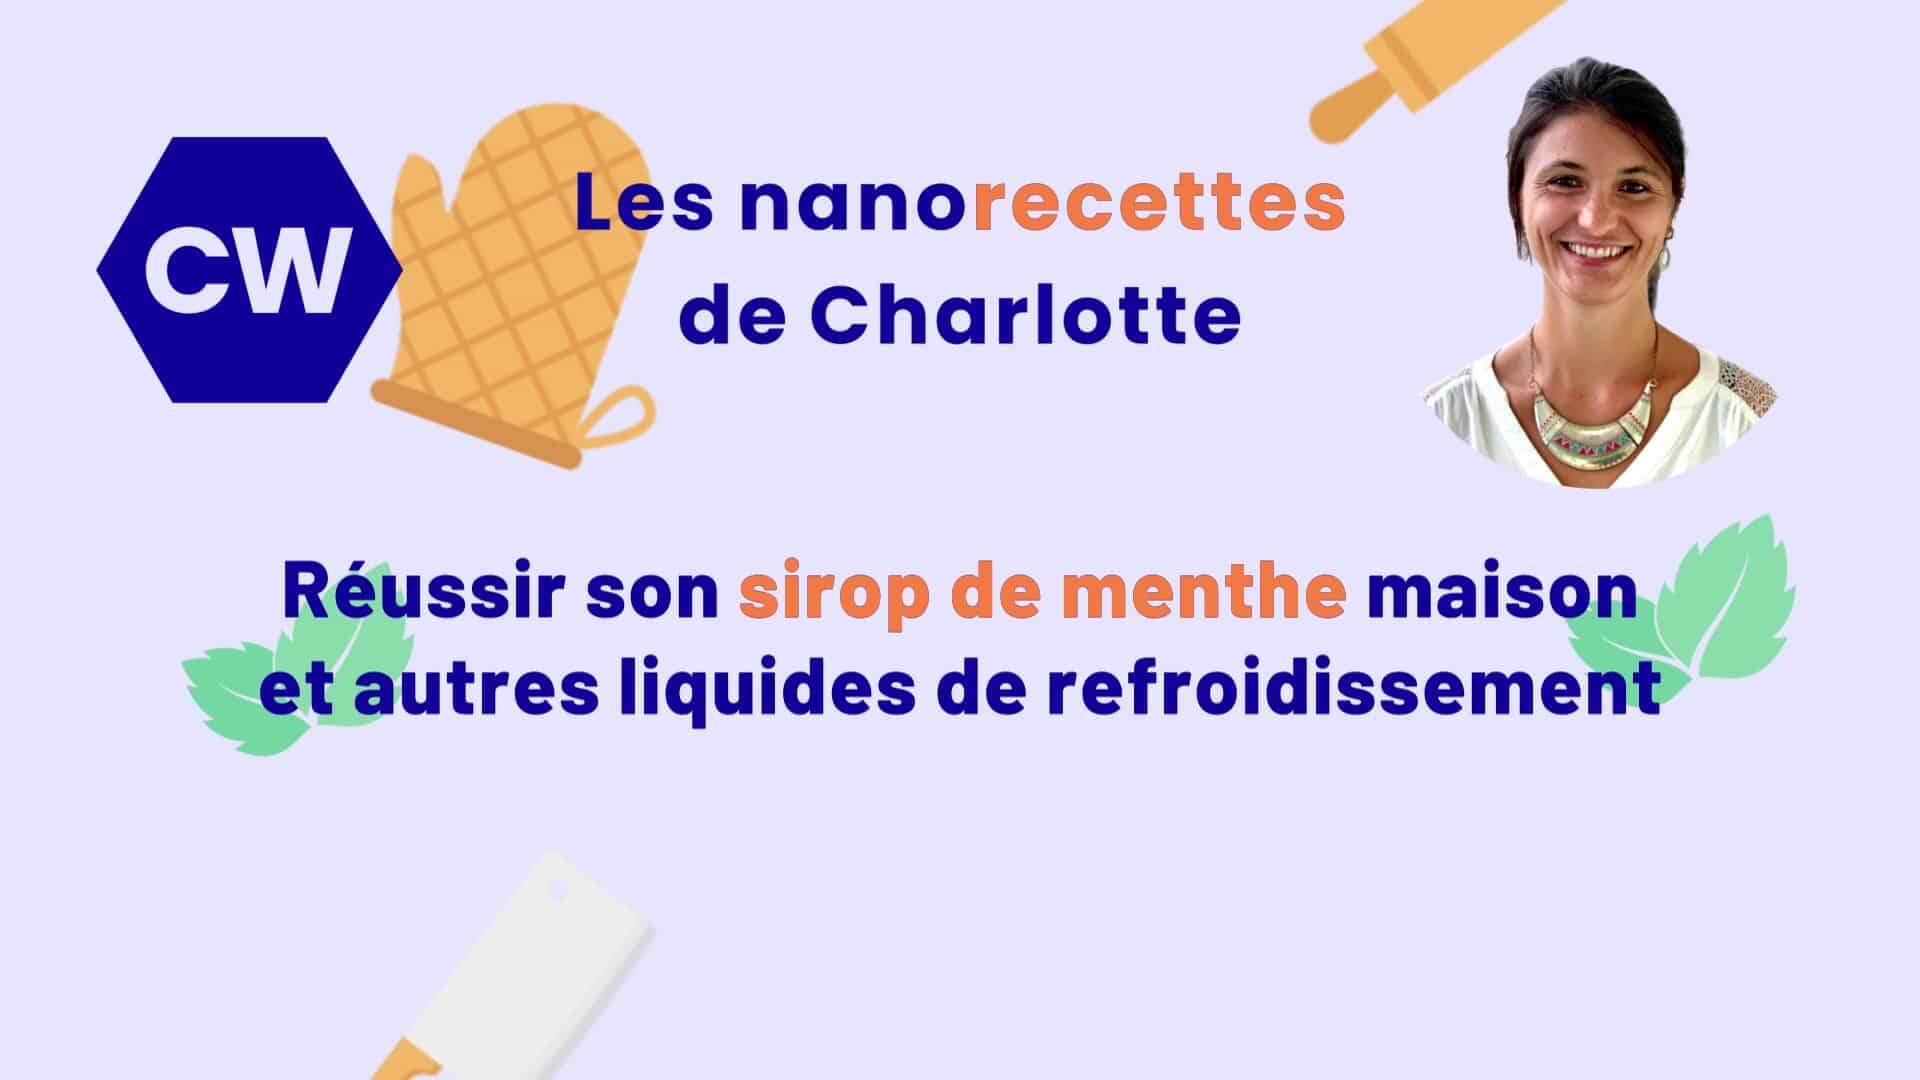 Les nanorecettes de Charlotte : Comment réussir son sirop de menthe maison et autres liquides de refroidissement.